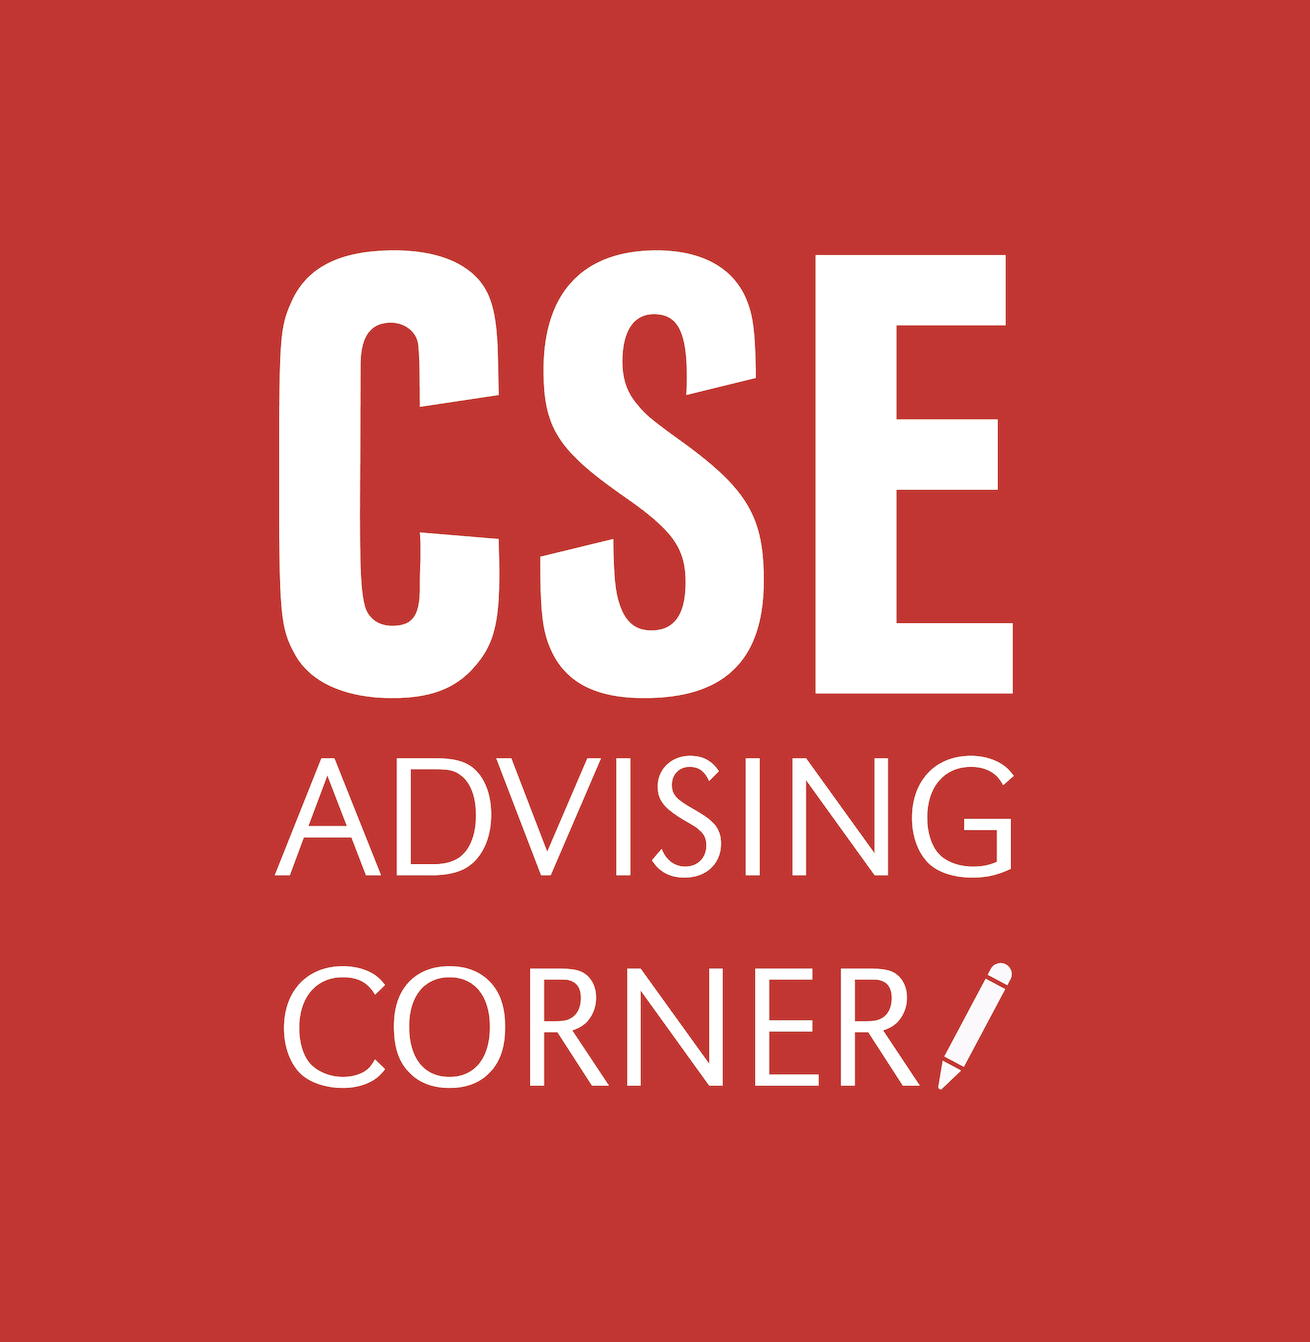 CSE Advising Corner